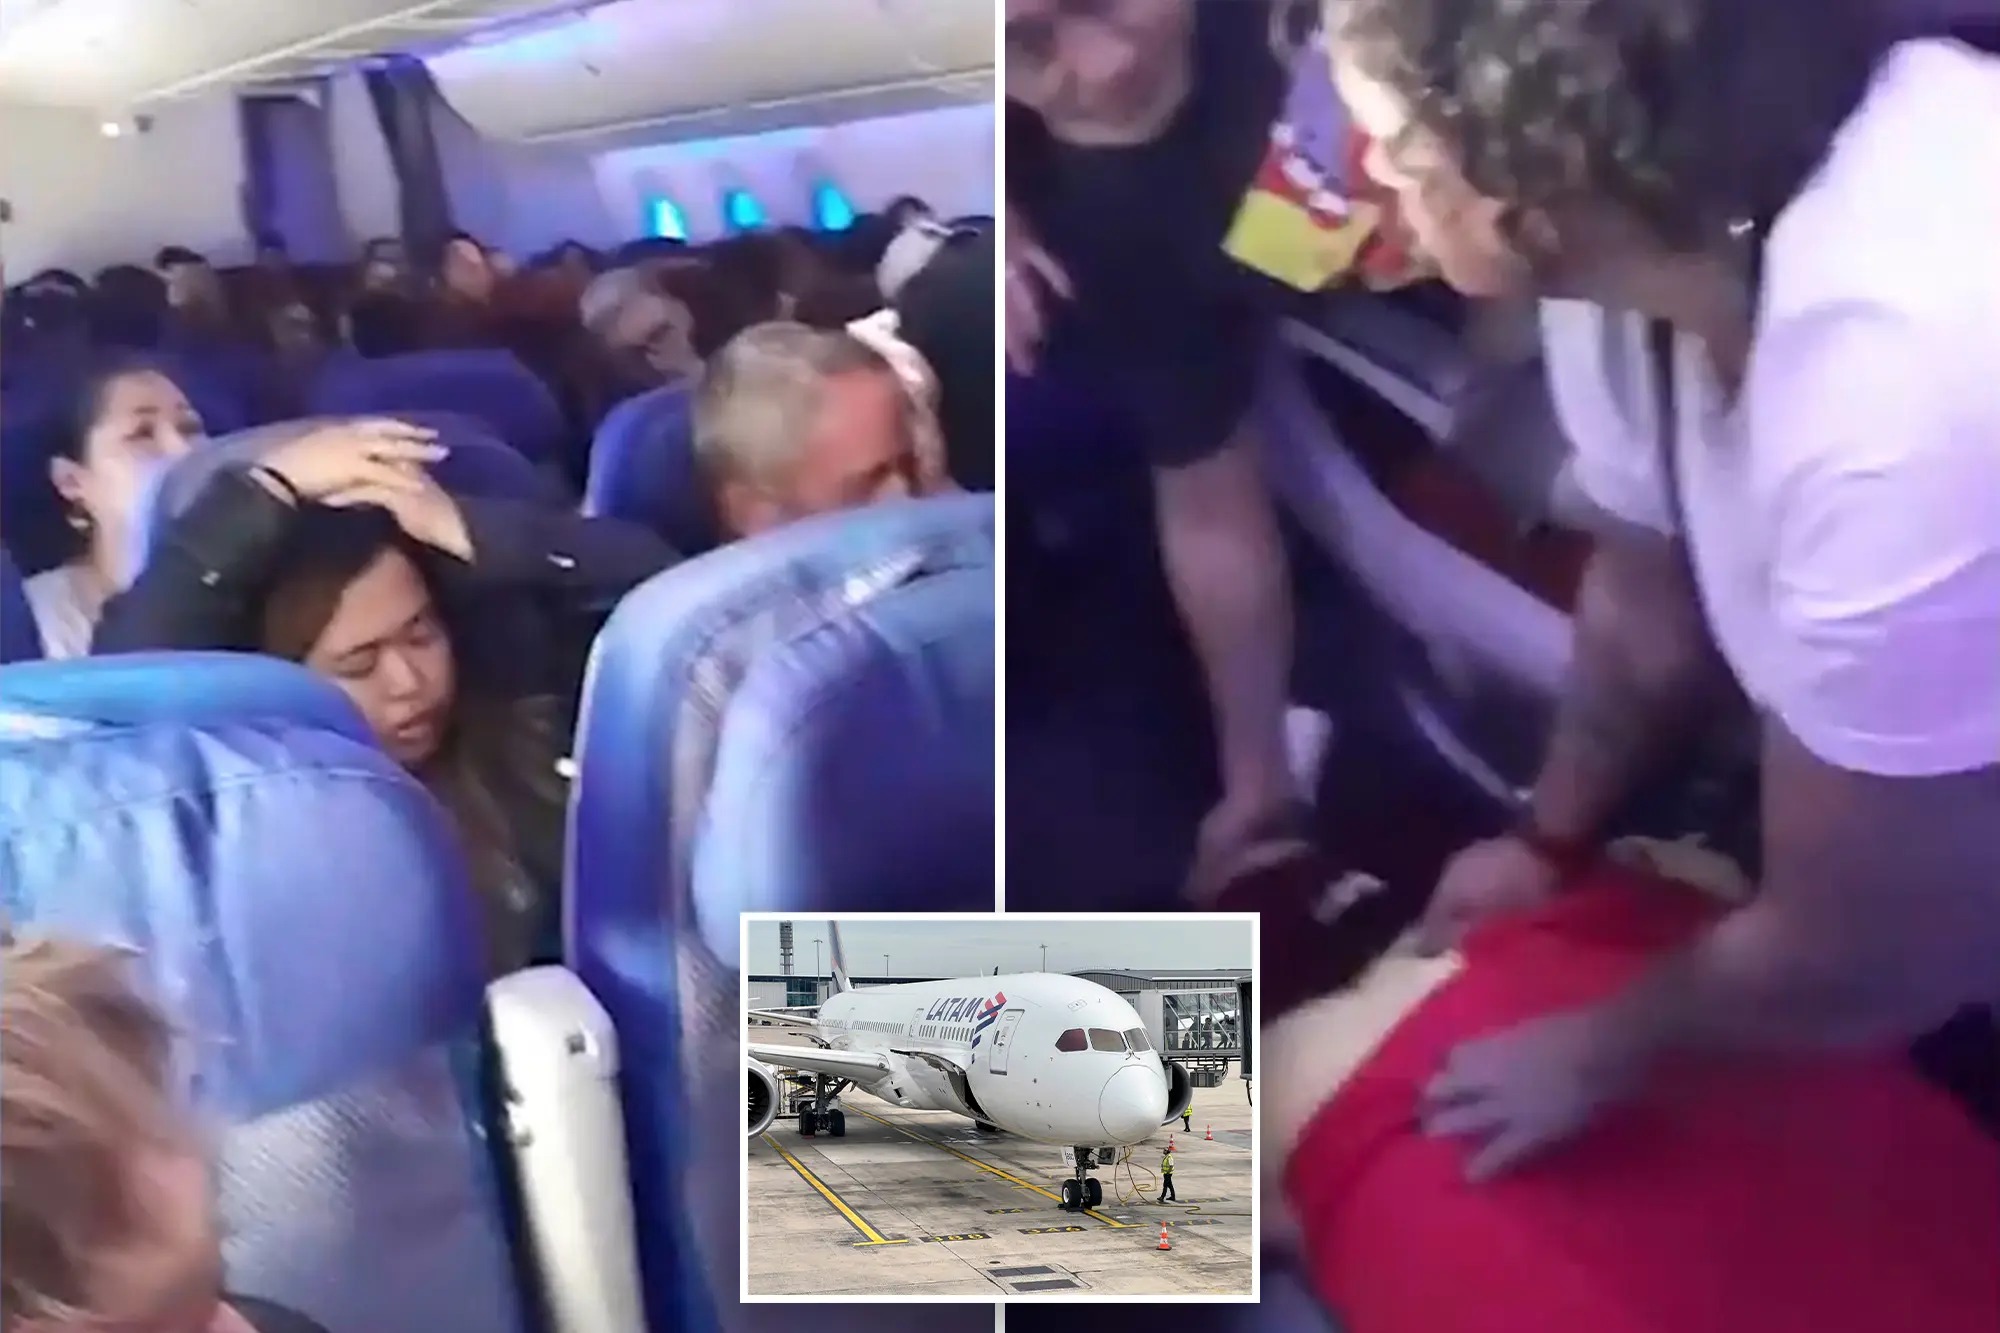 Máy bay Boeing 787 Dreamliner đang bay thì bất ngờ cắm đầu hướng xuống đất, giảm độ cao đột ngột khiến nhiều hành khách không cài dây an toàn trên khoang bị hất văng khỏi ghế, va lên trần và rơi xuống các lối đi.